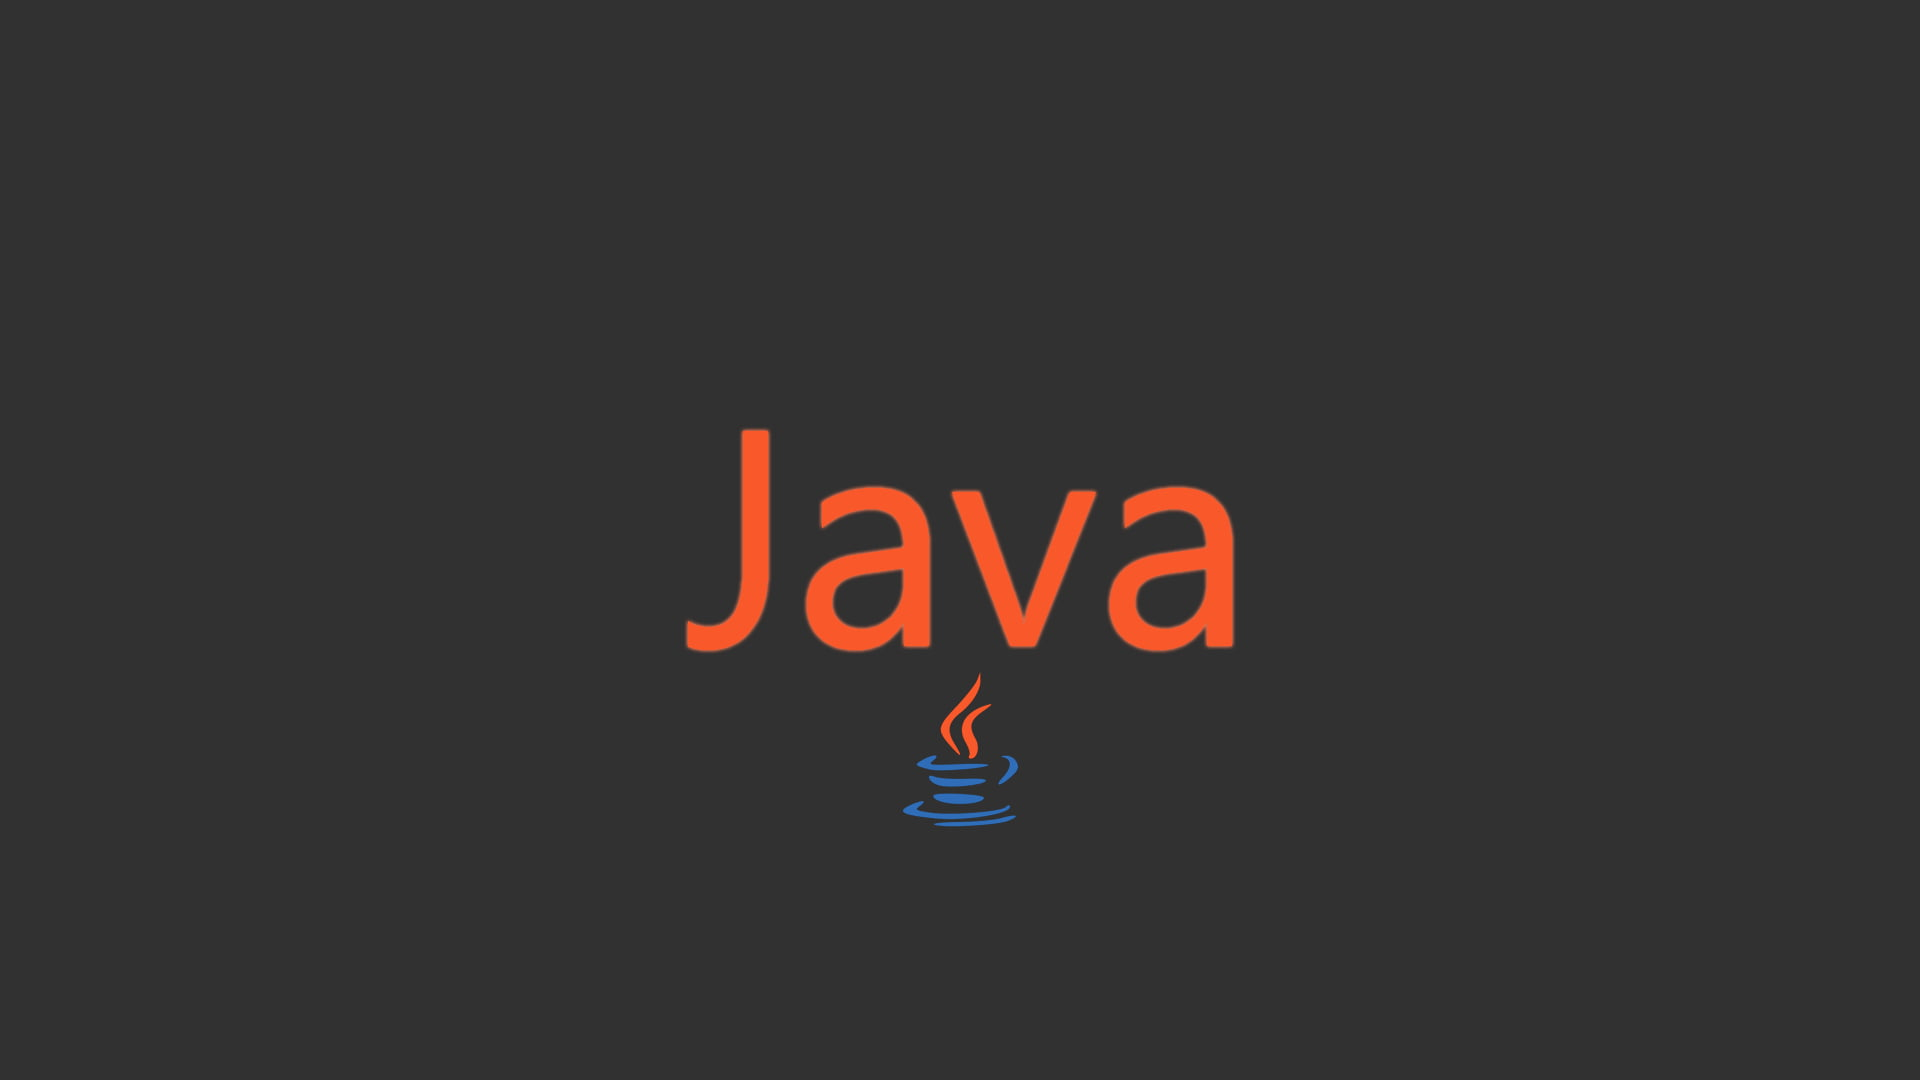 详细介绍Java中的几种常用关键字，包括访问修饰符、控制流关键字、数据类型关键字等